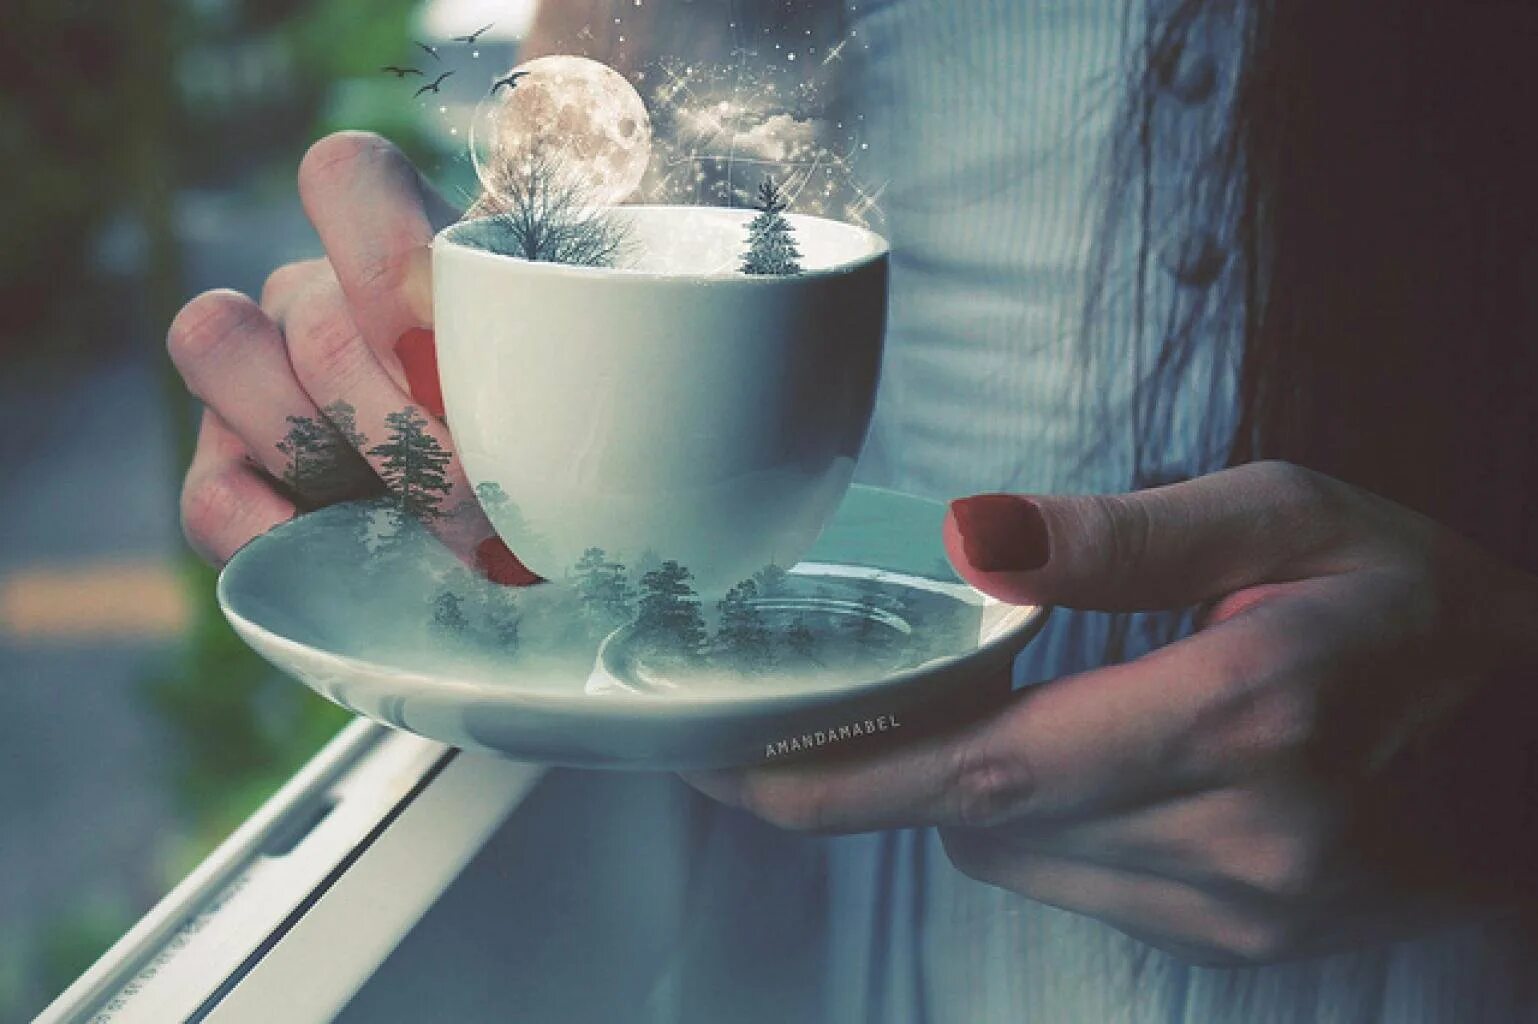 Улыбка согревает душу. Кружка чая в руках. Волшебное утро. Доброе волшебное утро. Красота в простых вещах.